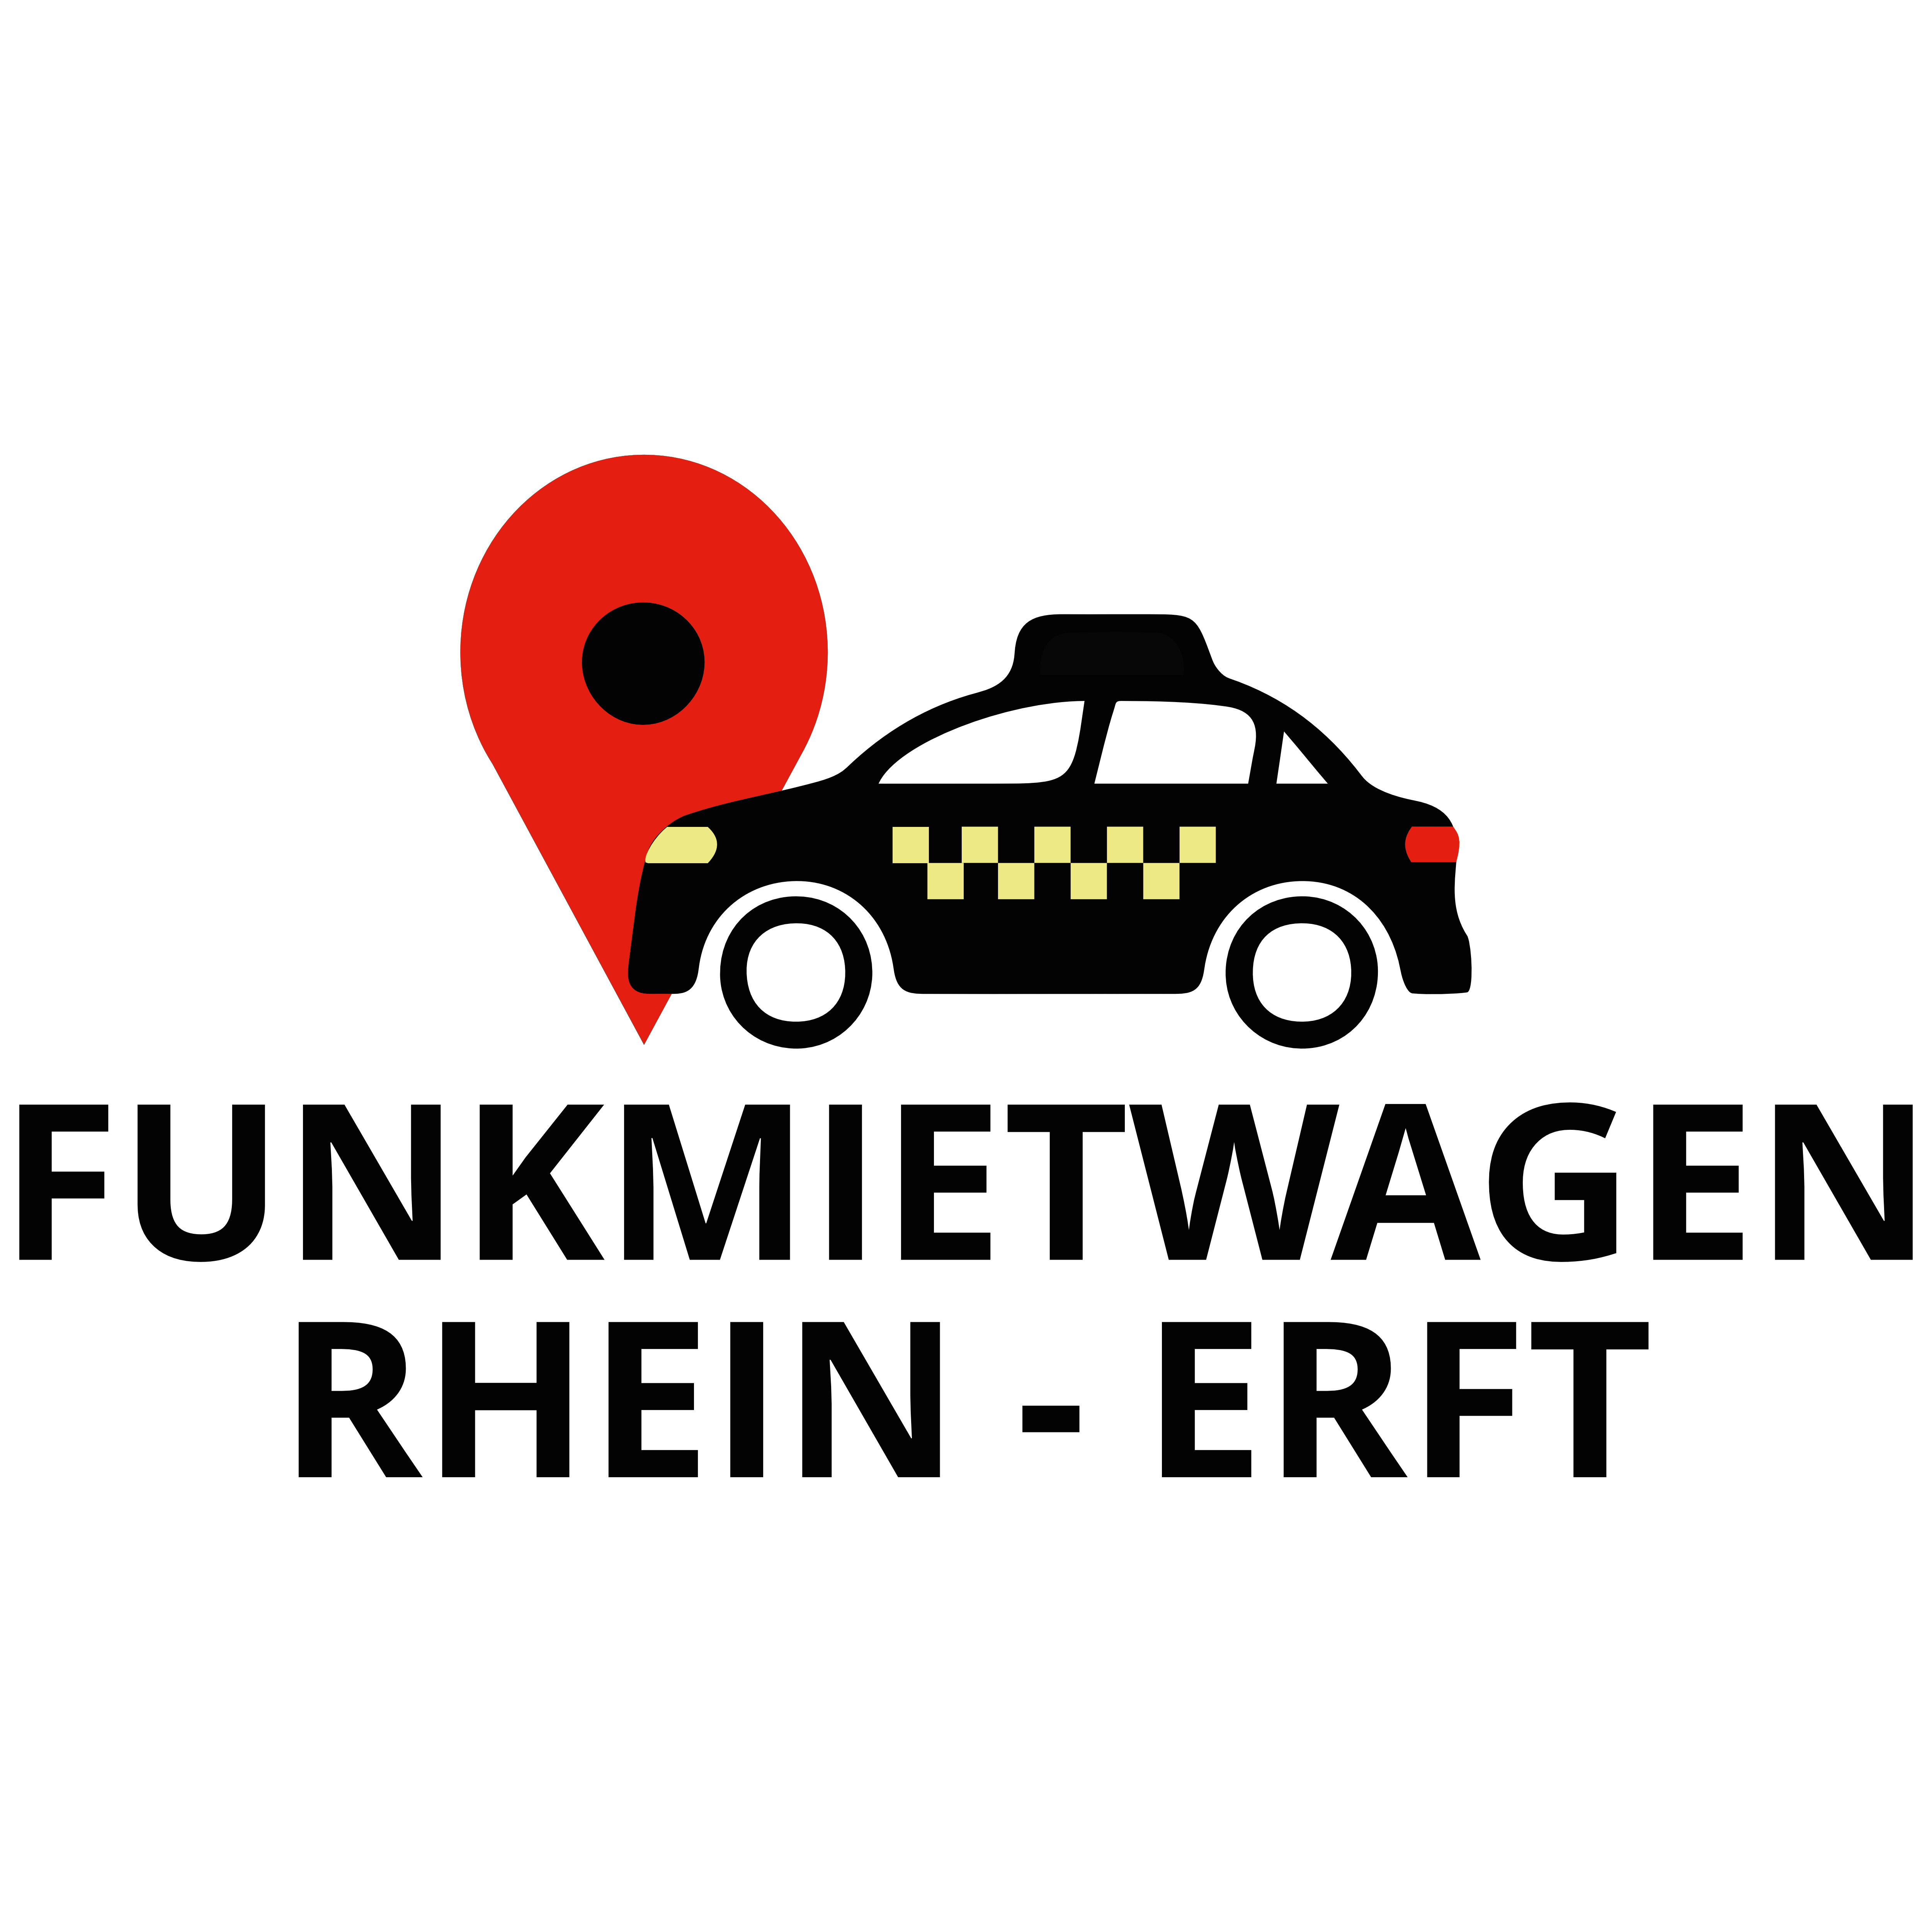 Funkmietwagen Rhein-Erft in Bergheim an der Erft - Logo